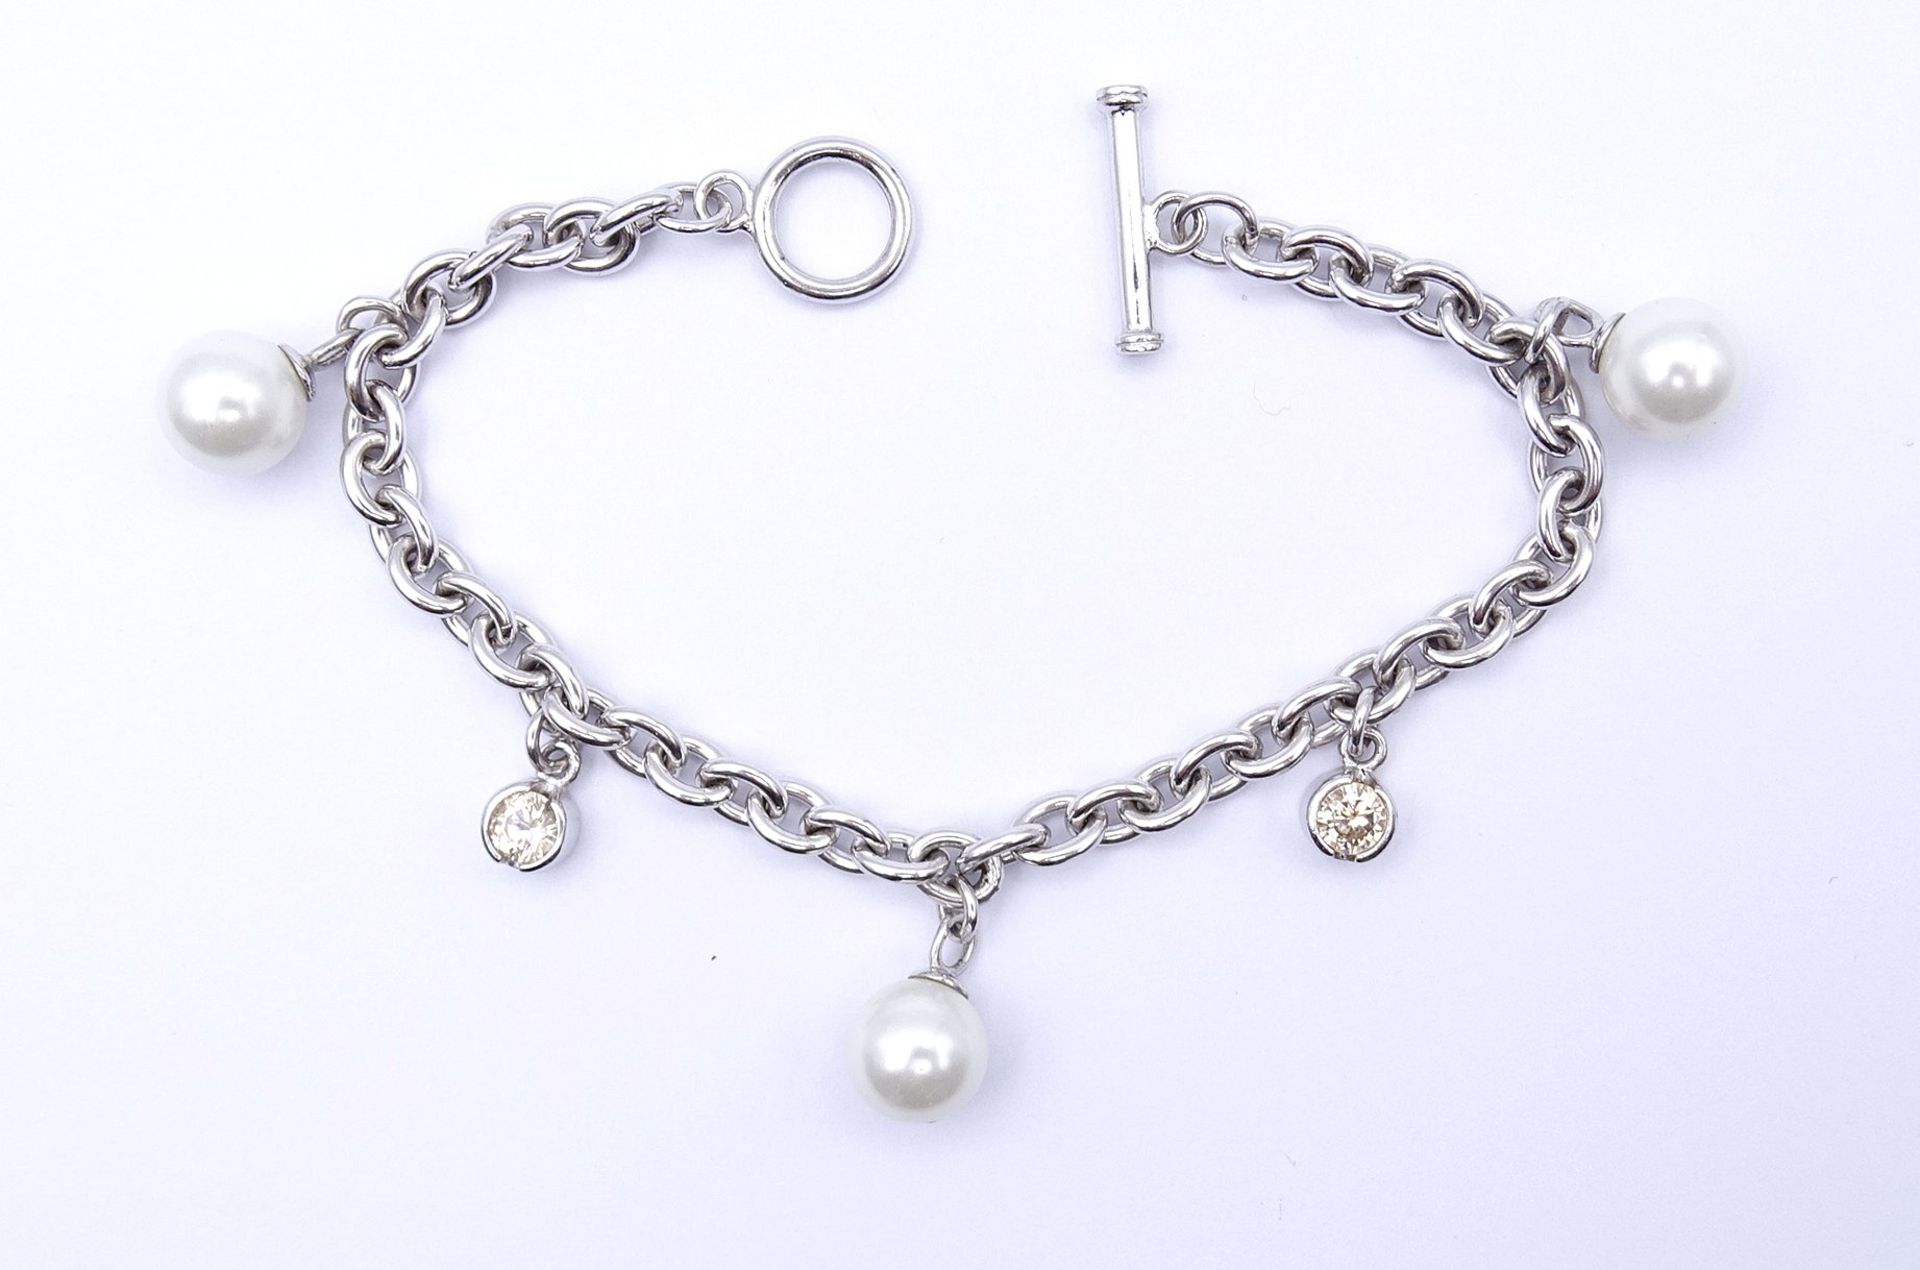 Armband mit Perlen, Sterlingsilber 925/000, L. 20cm, 21,1g. - Image 2 of 6